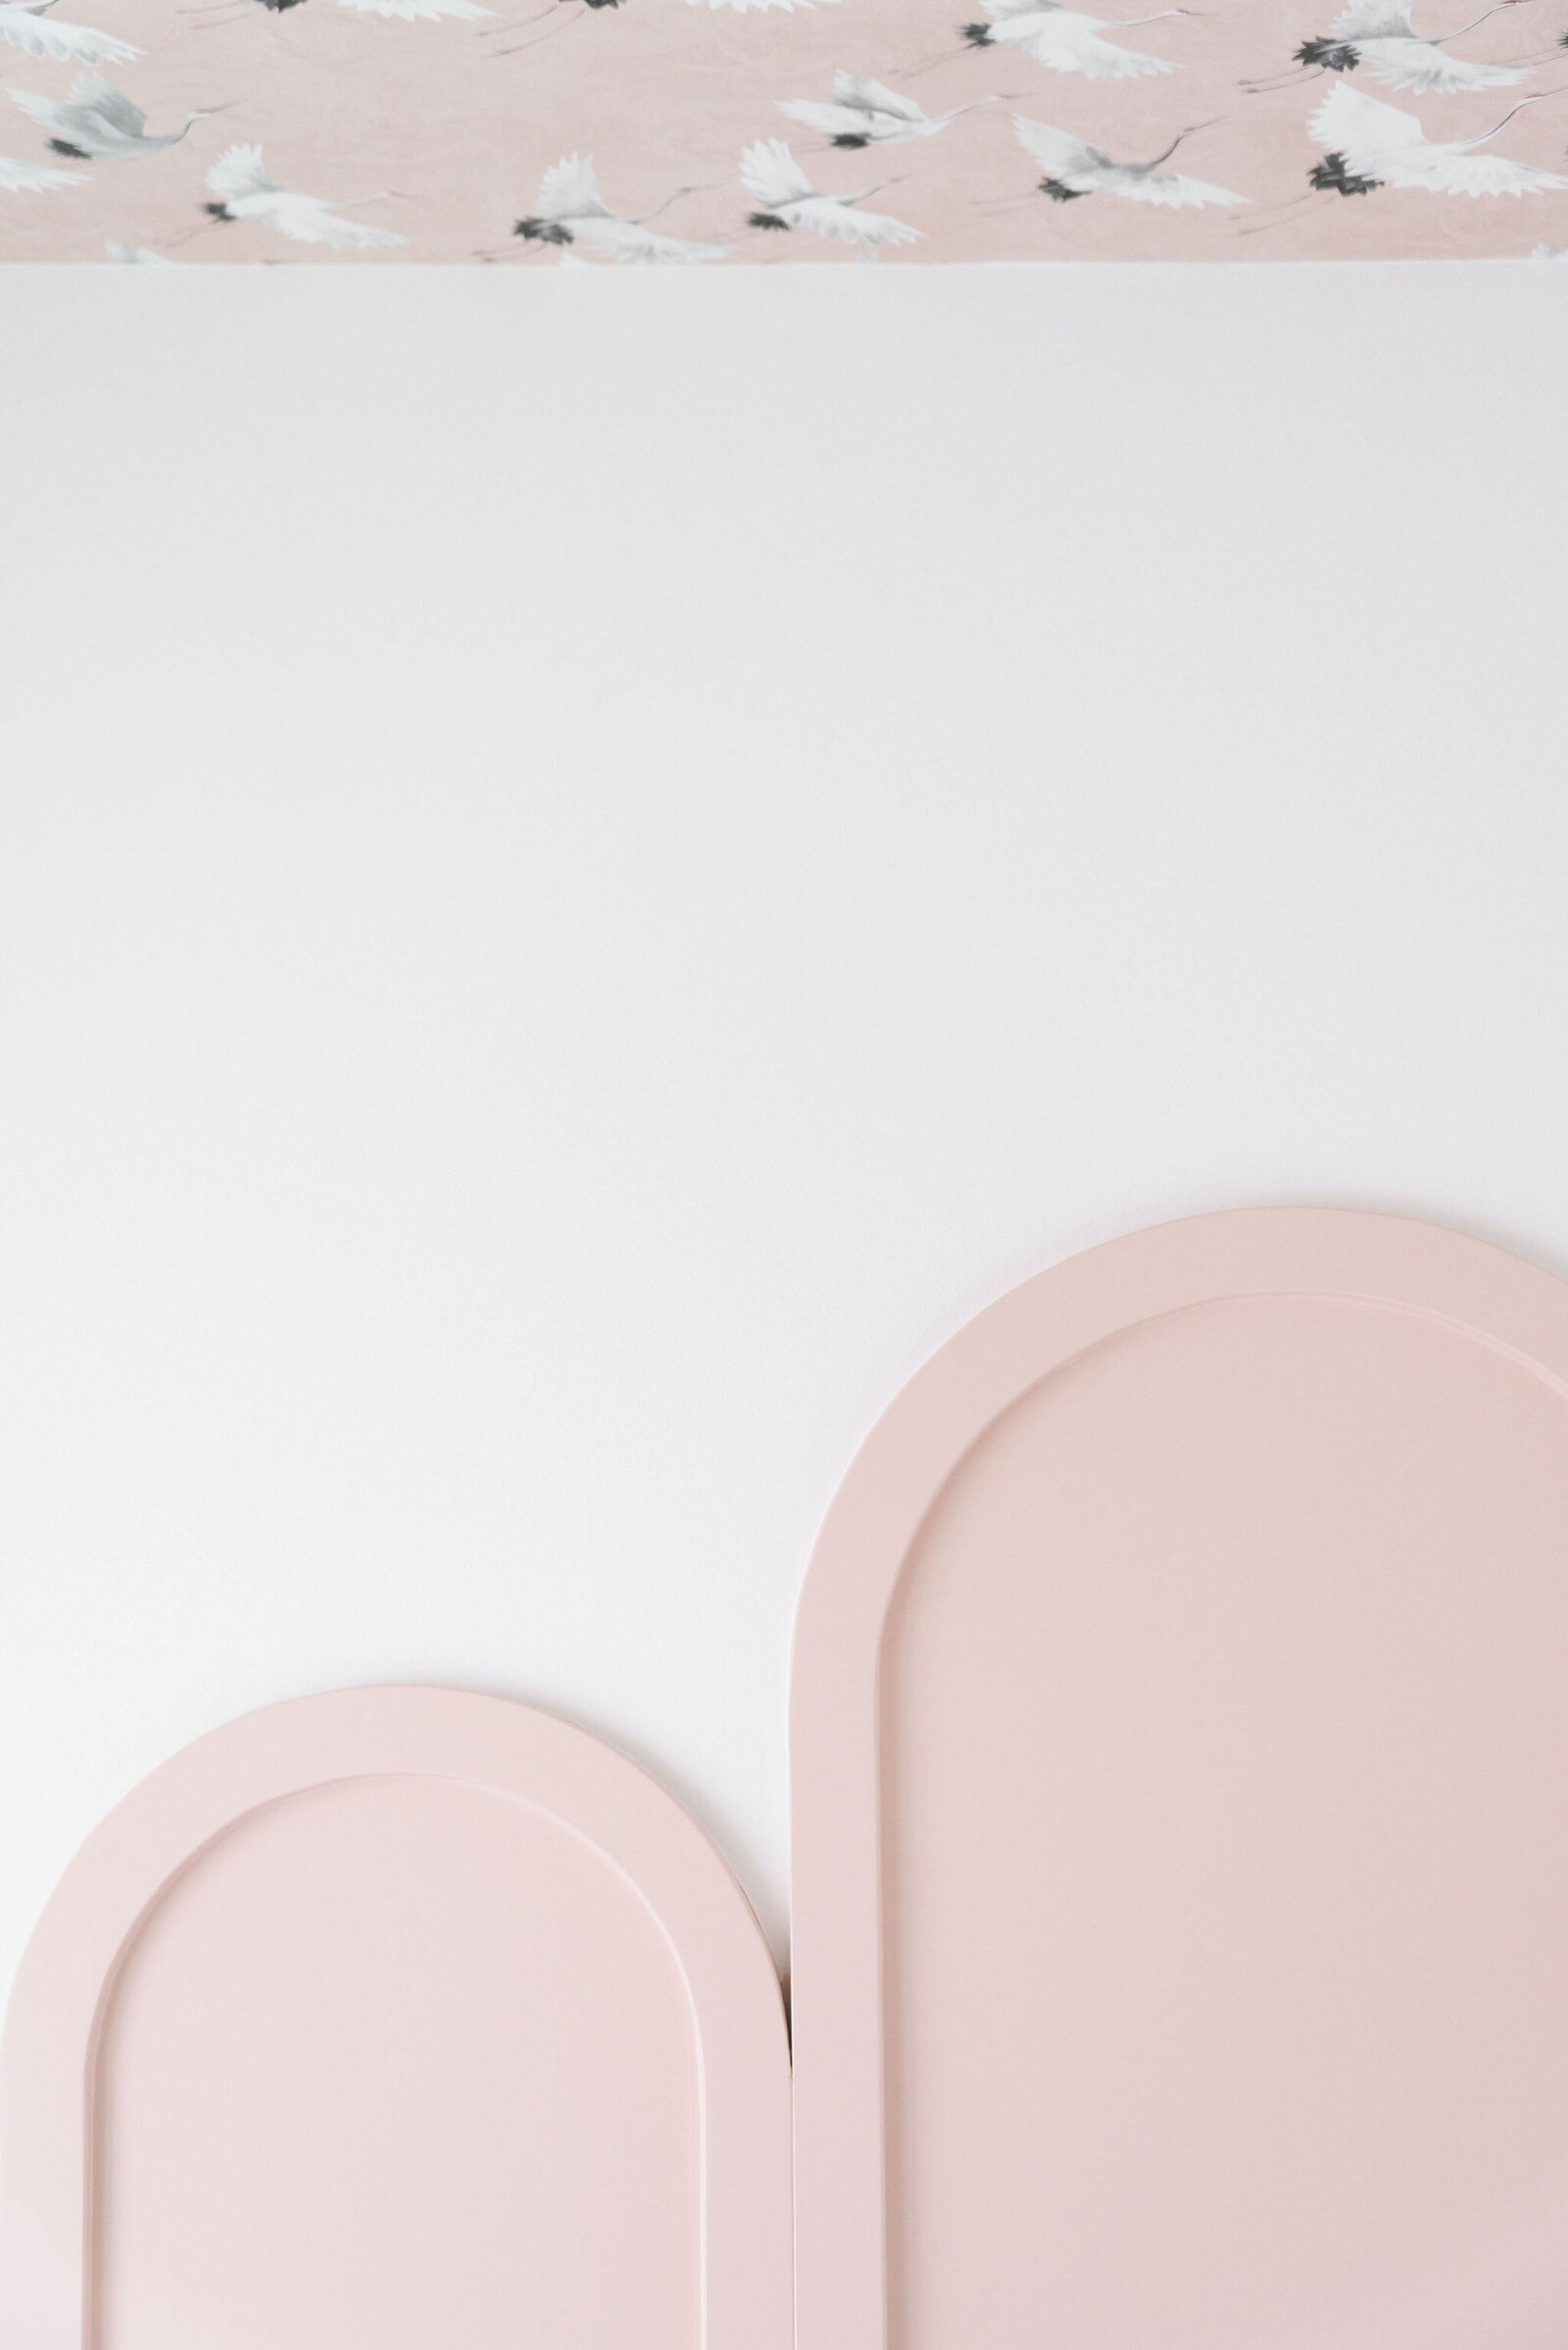 NuelaDesign_Pink Details_Girl Room Design